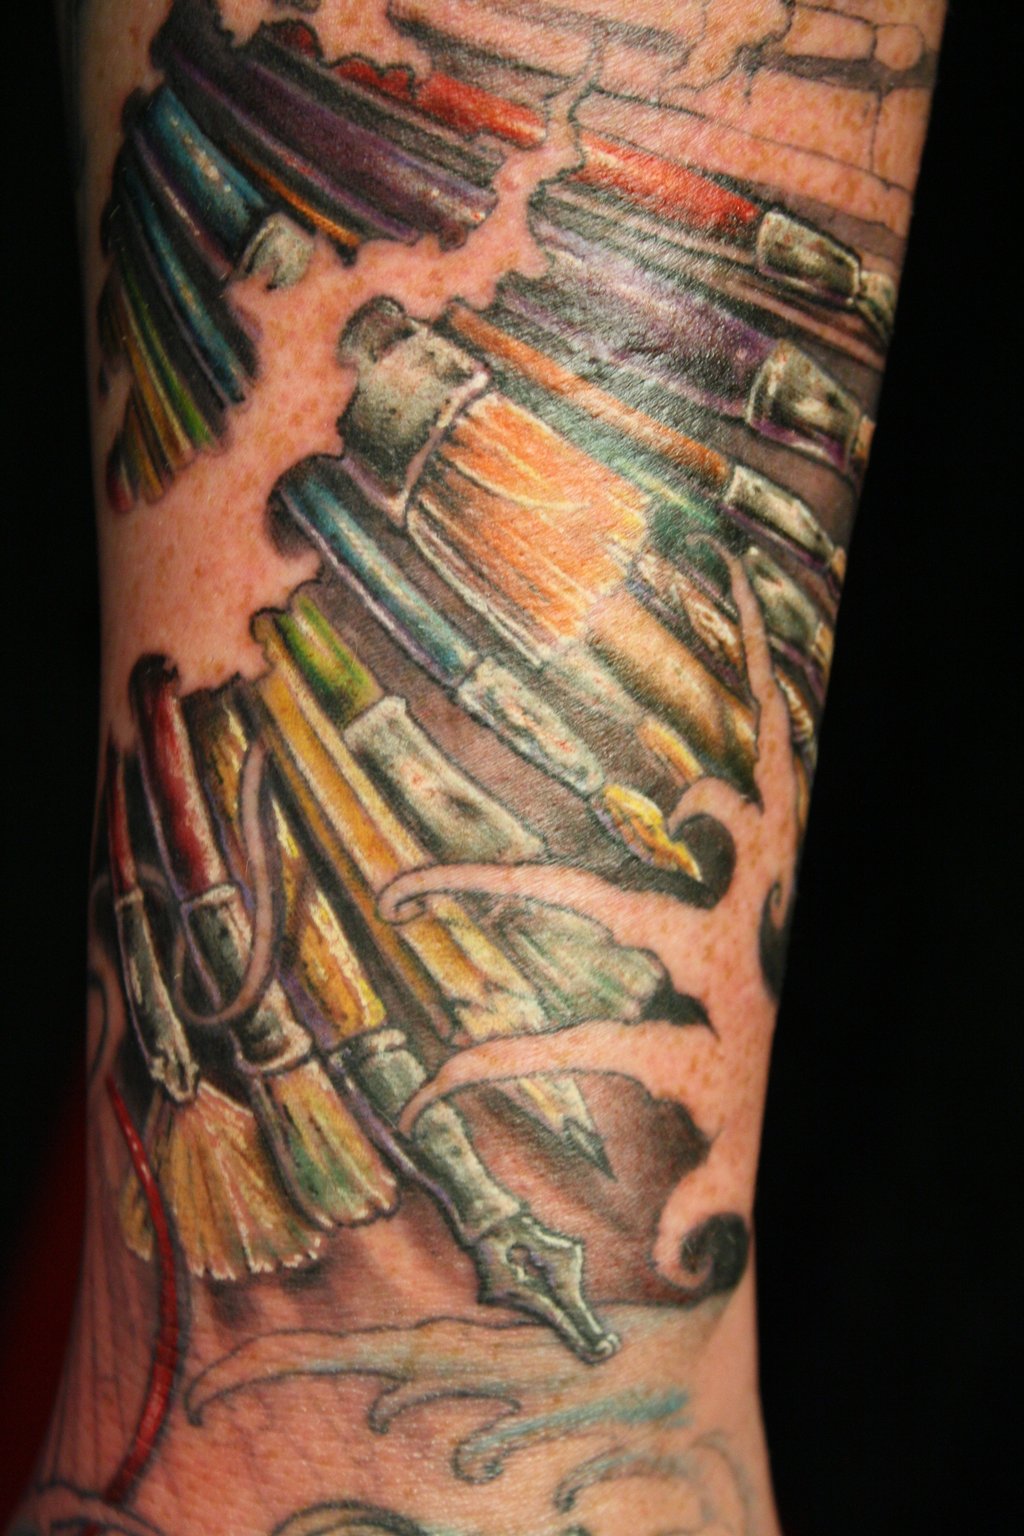 Paint brushes arm tattoo - | TattooMagz › Tattoo Designs ...